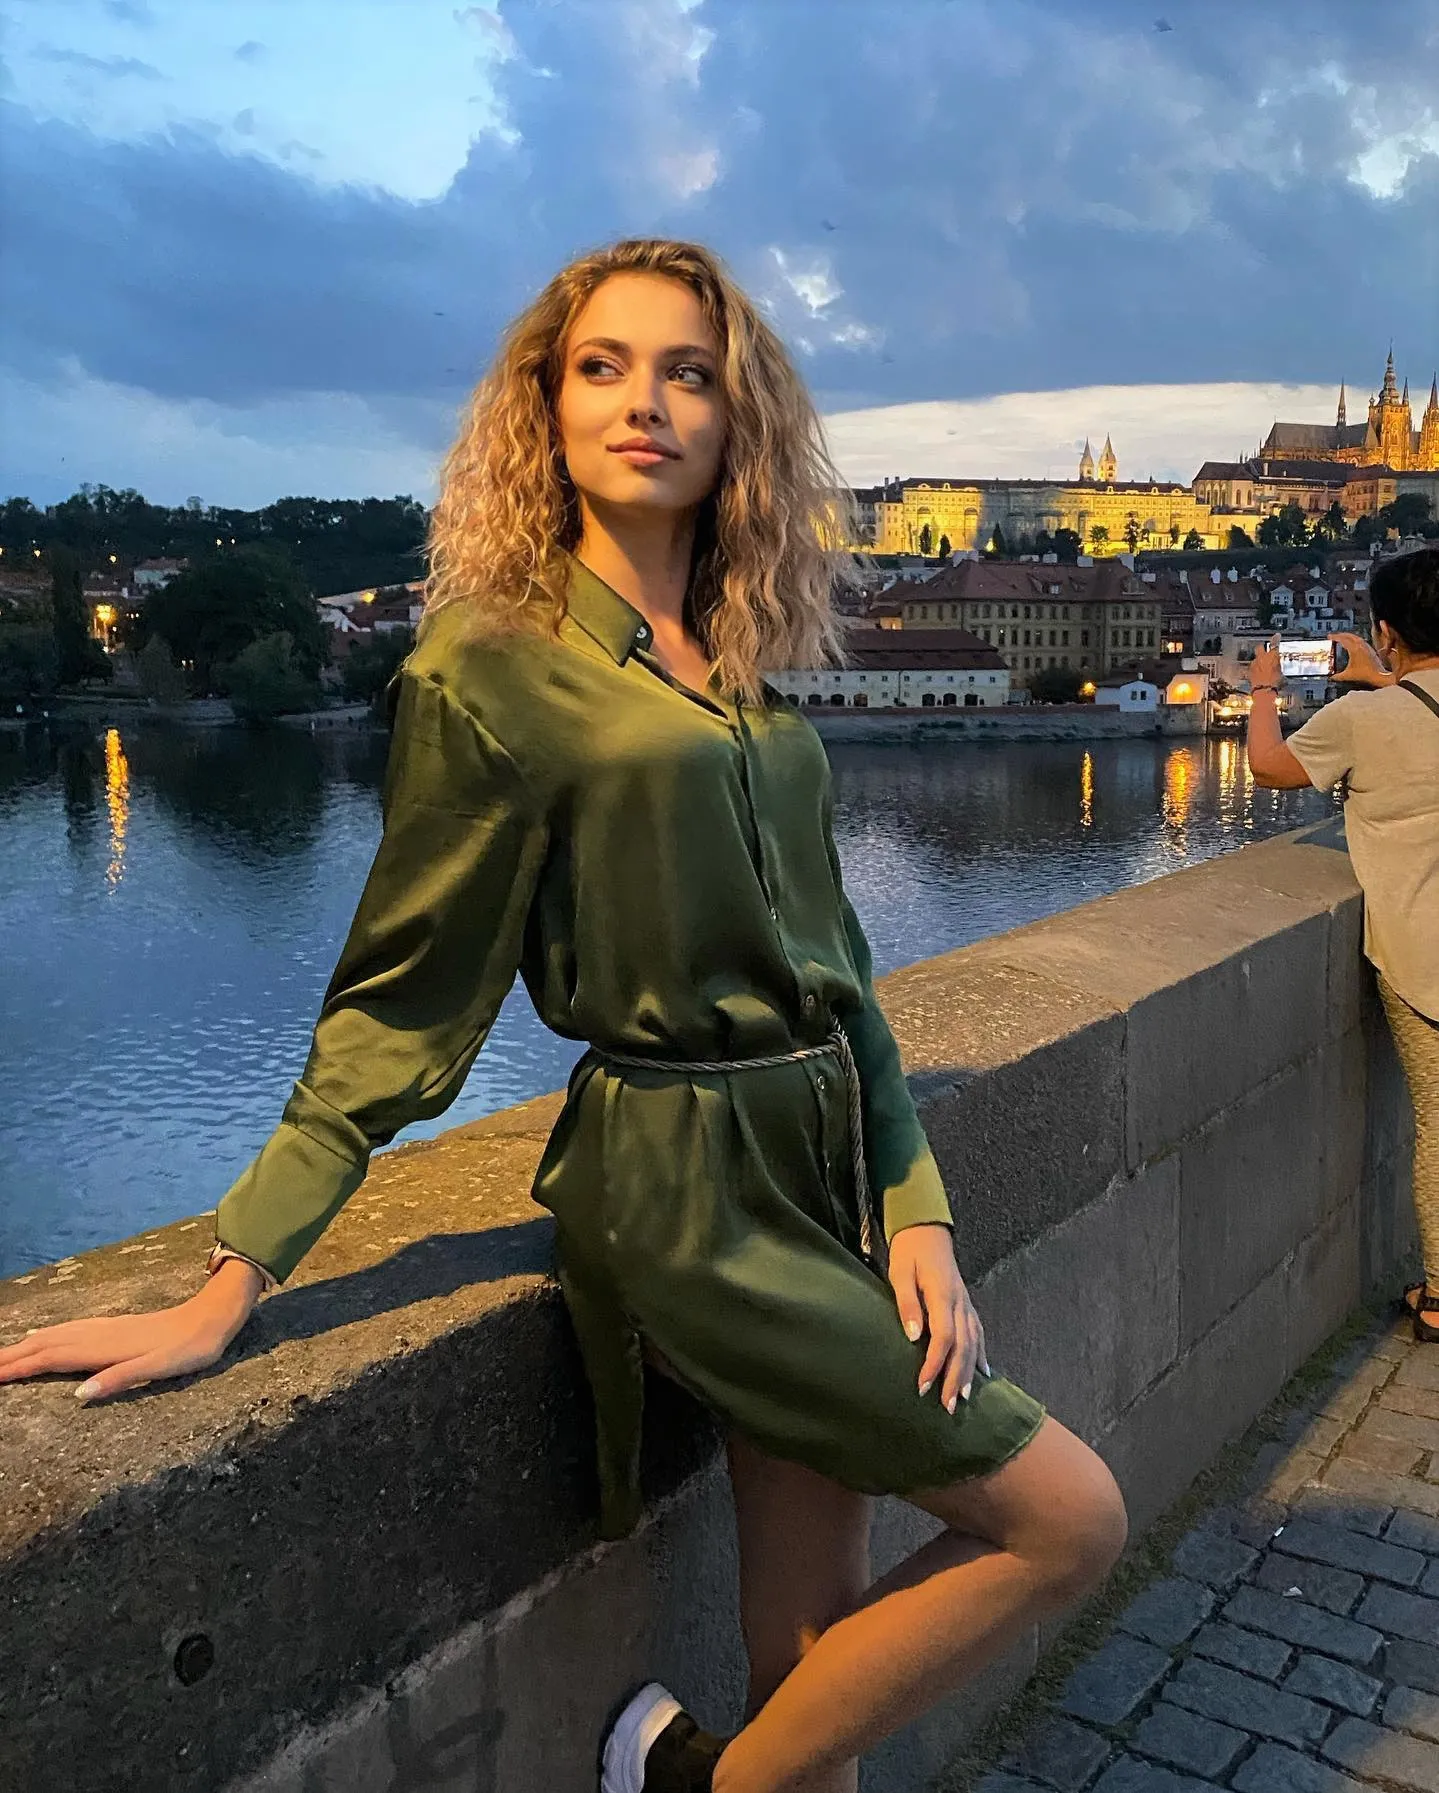 Anna femme russe 2019